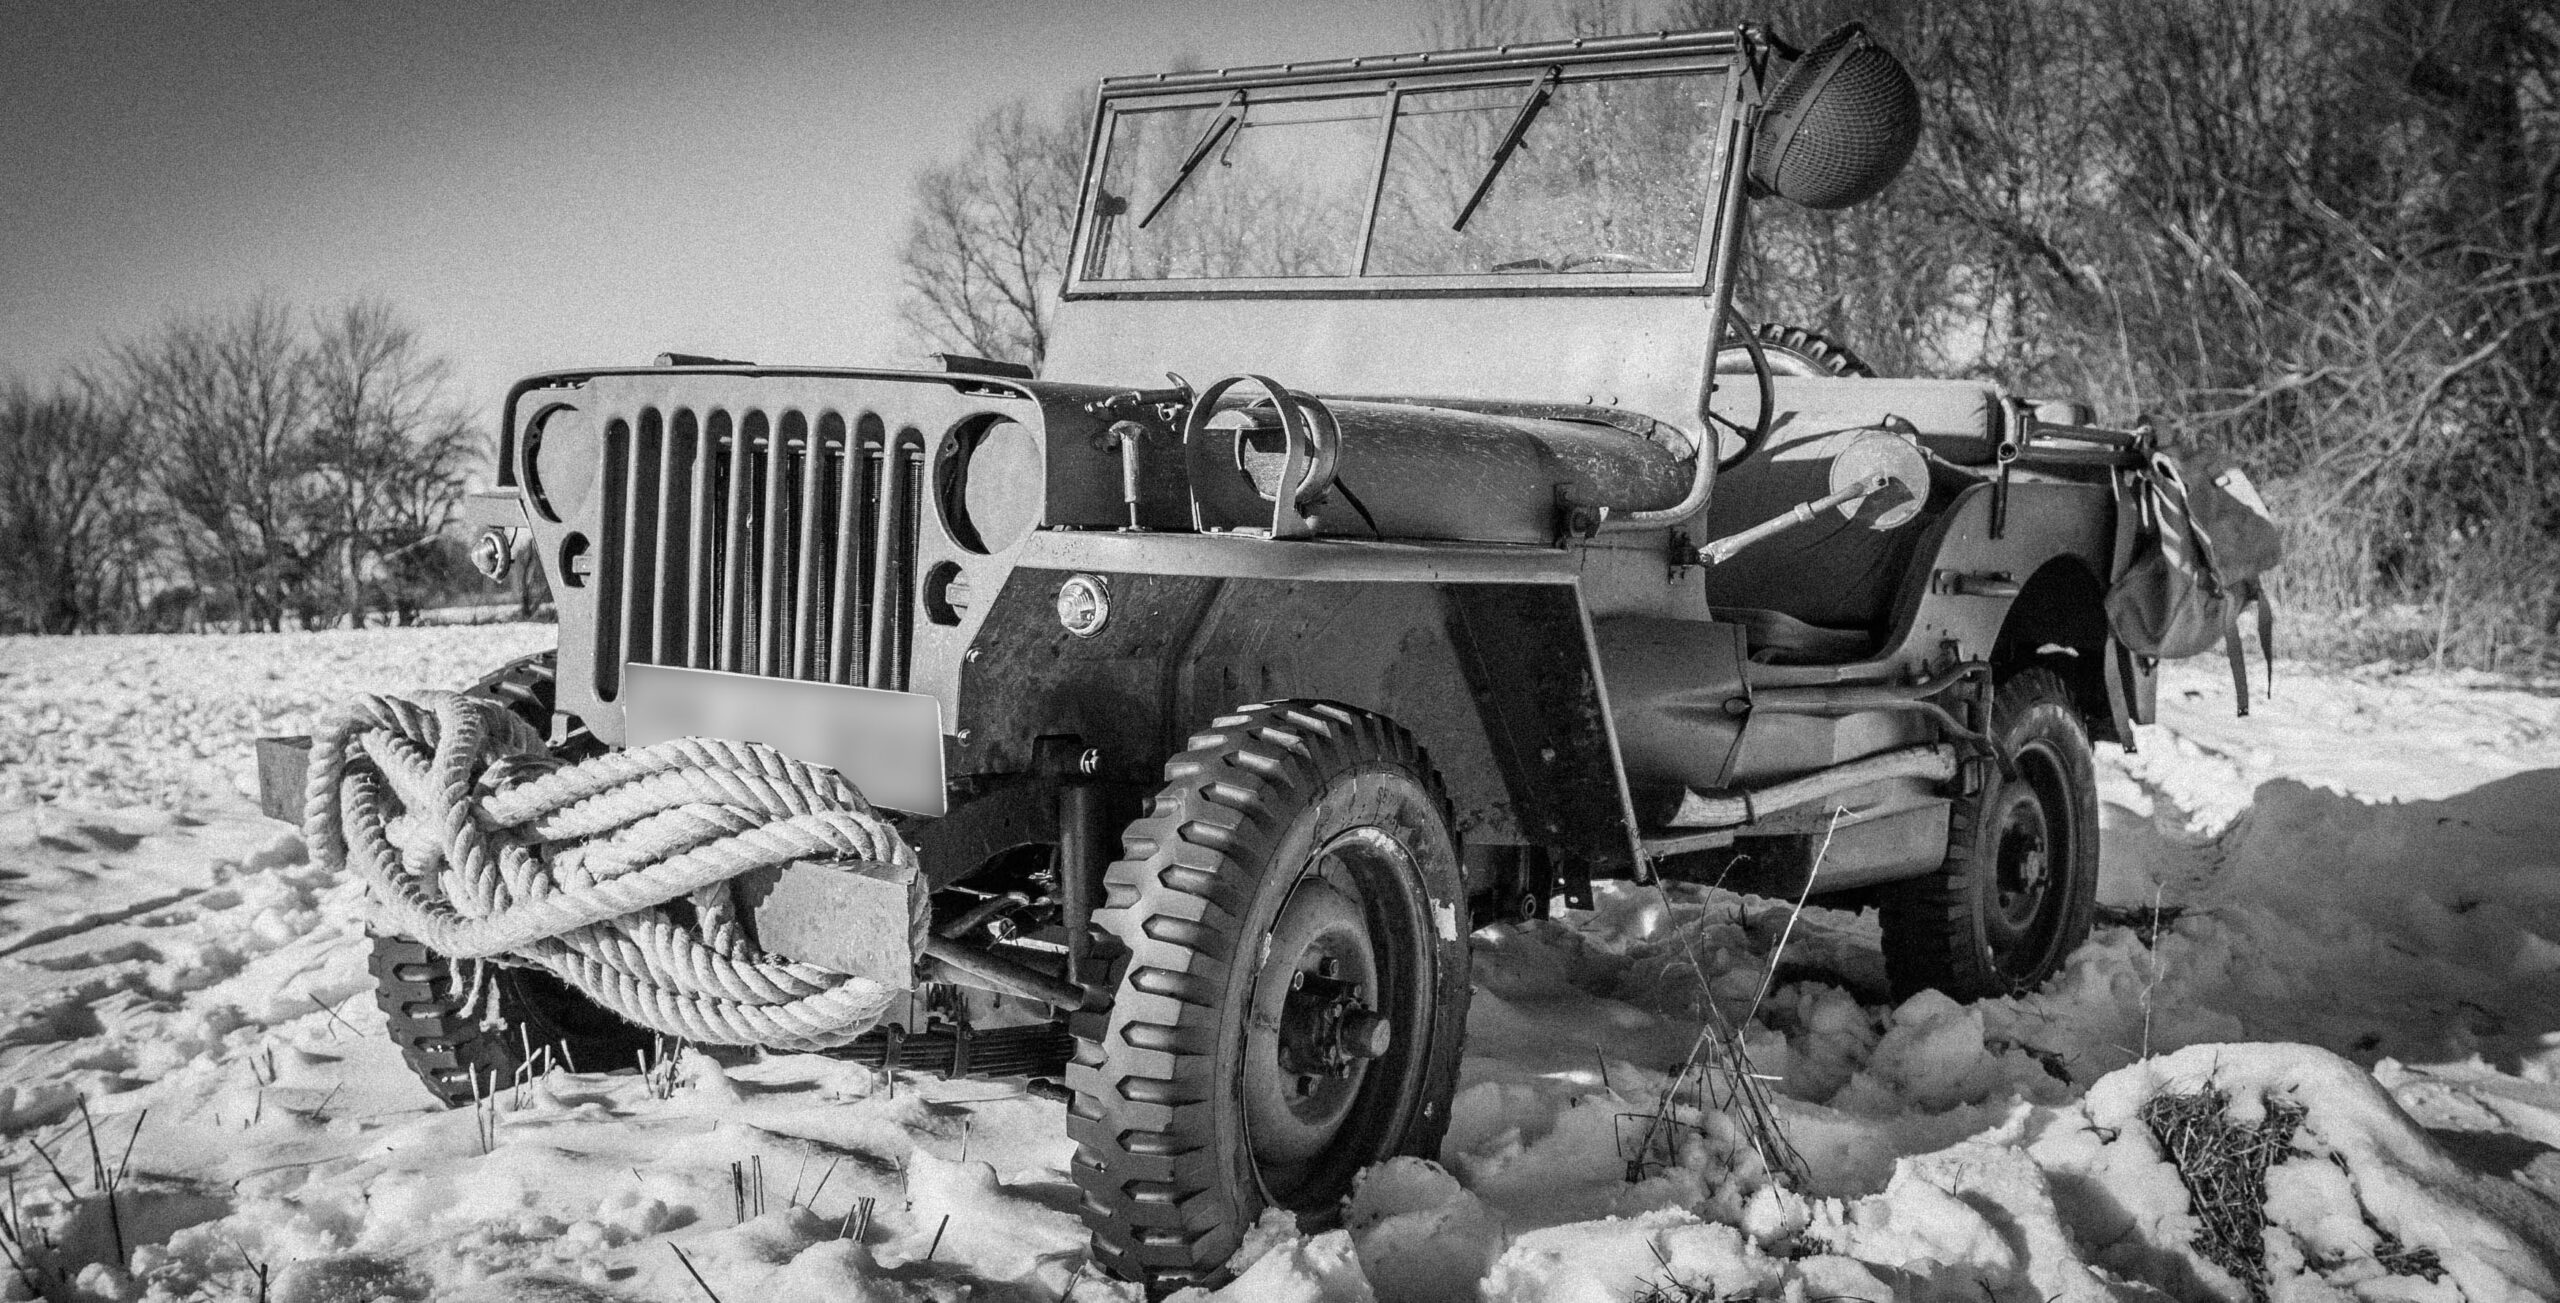 Tærrænkørsel med willys jeep mb i sneen